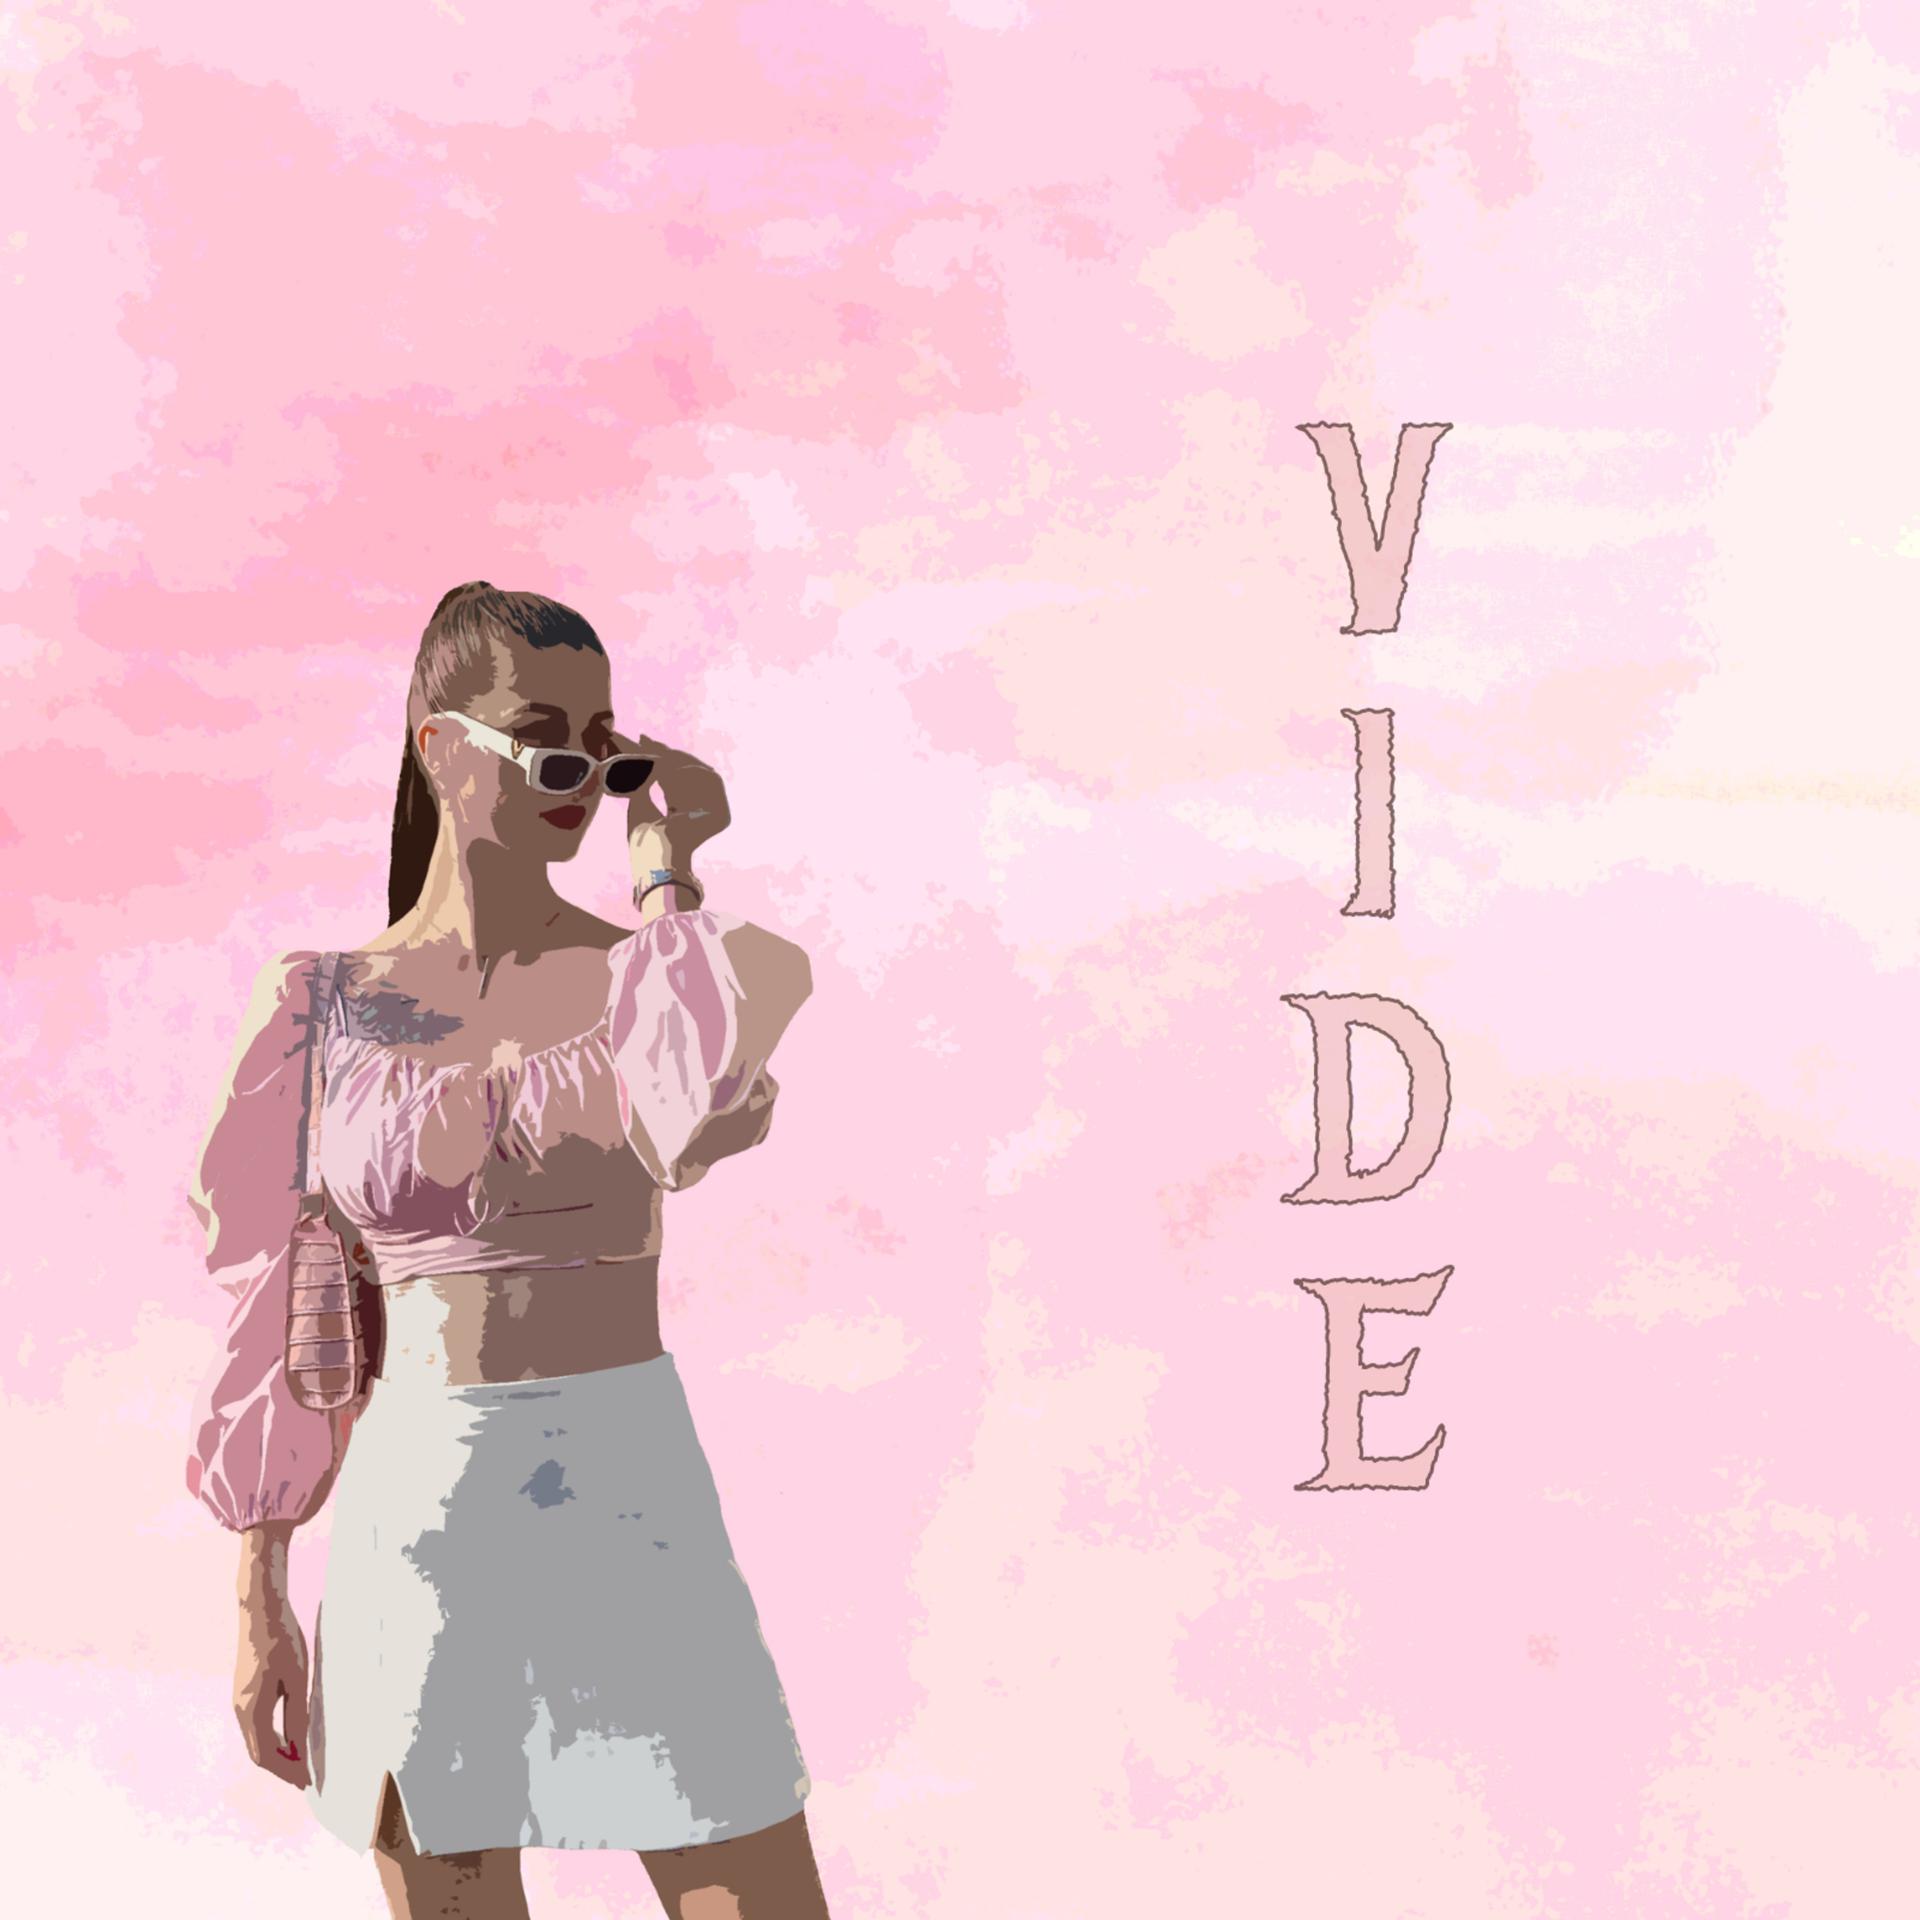 Постер альбома Vide